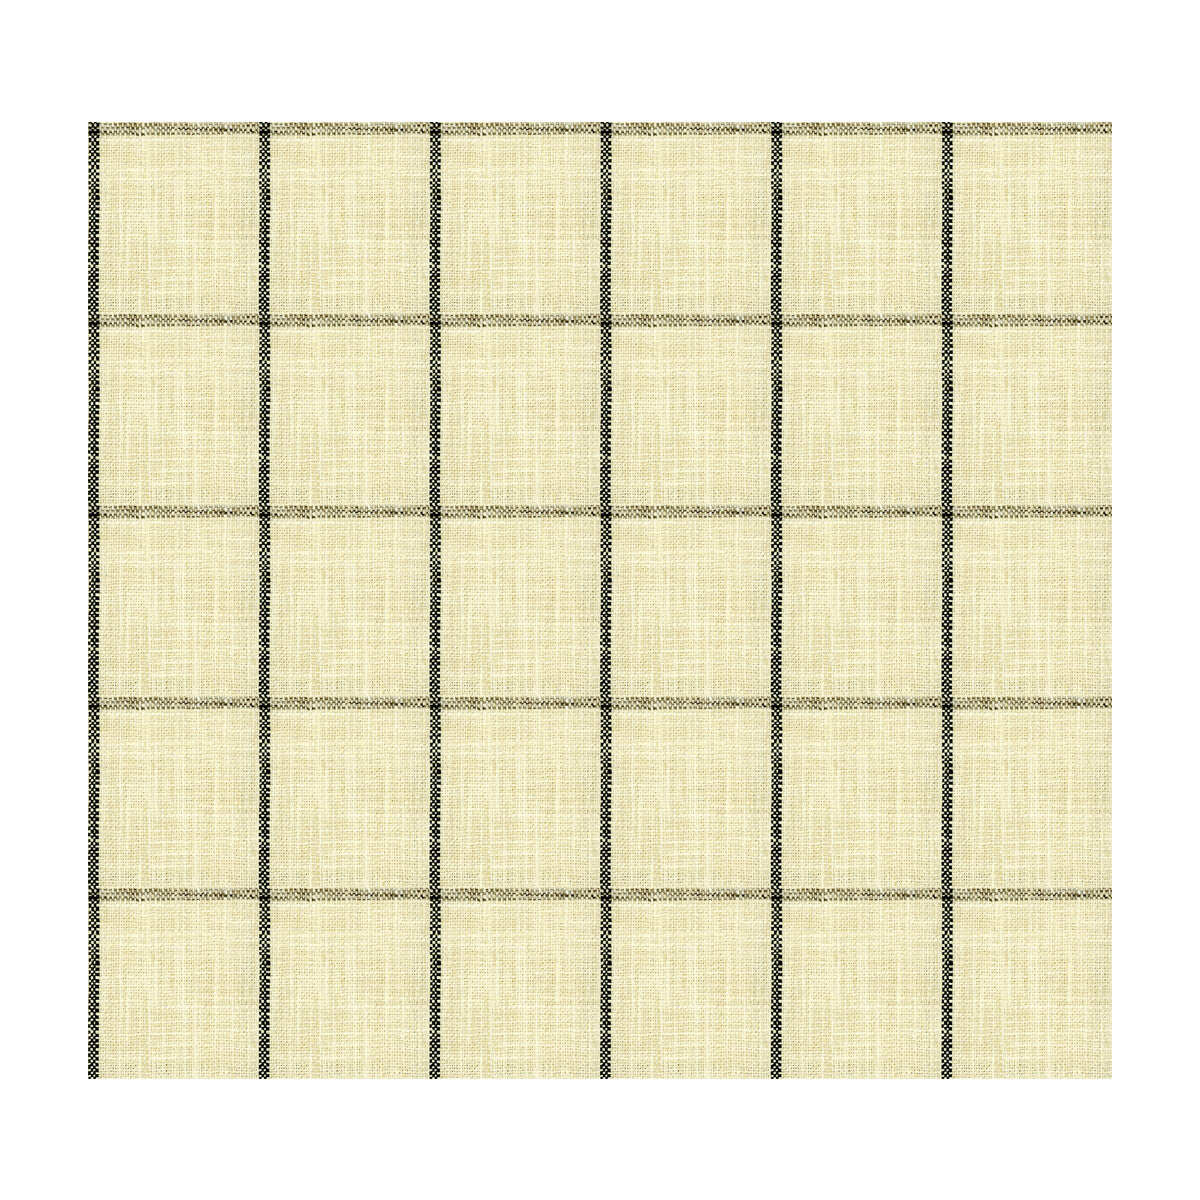 Kravet Basics fabric in 34085-816 color - pattern 34085.816.0 - by Kravet Basics